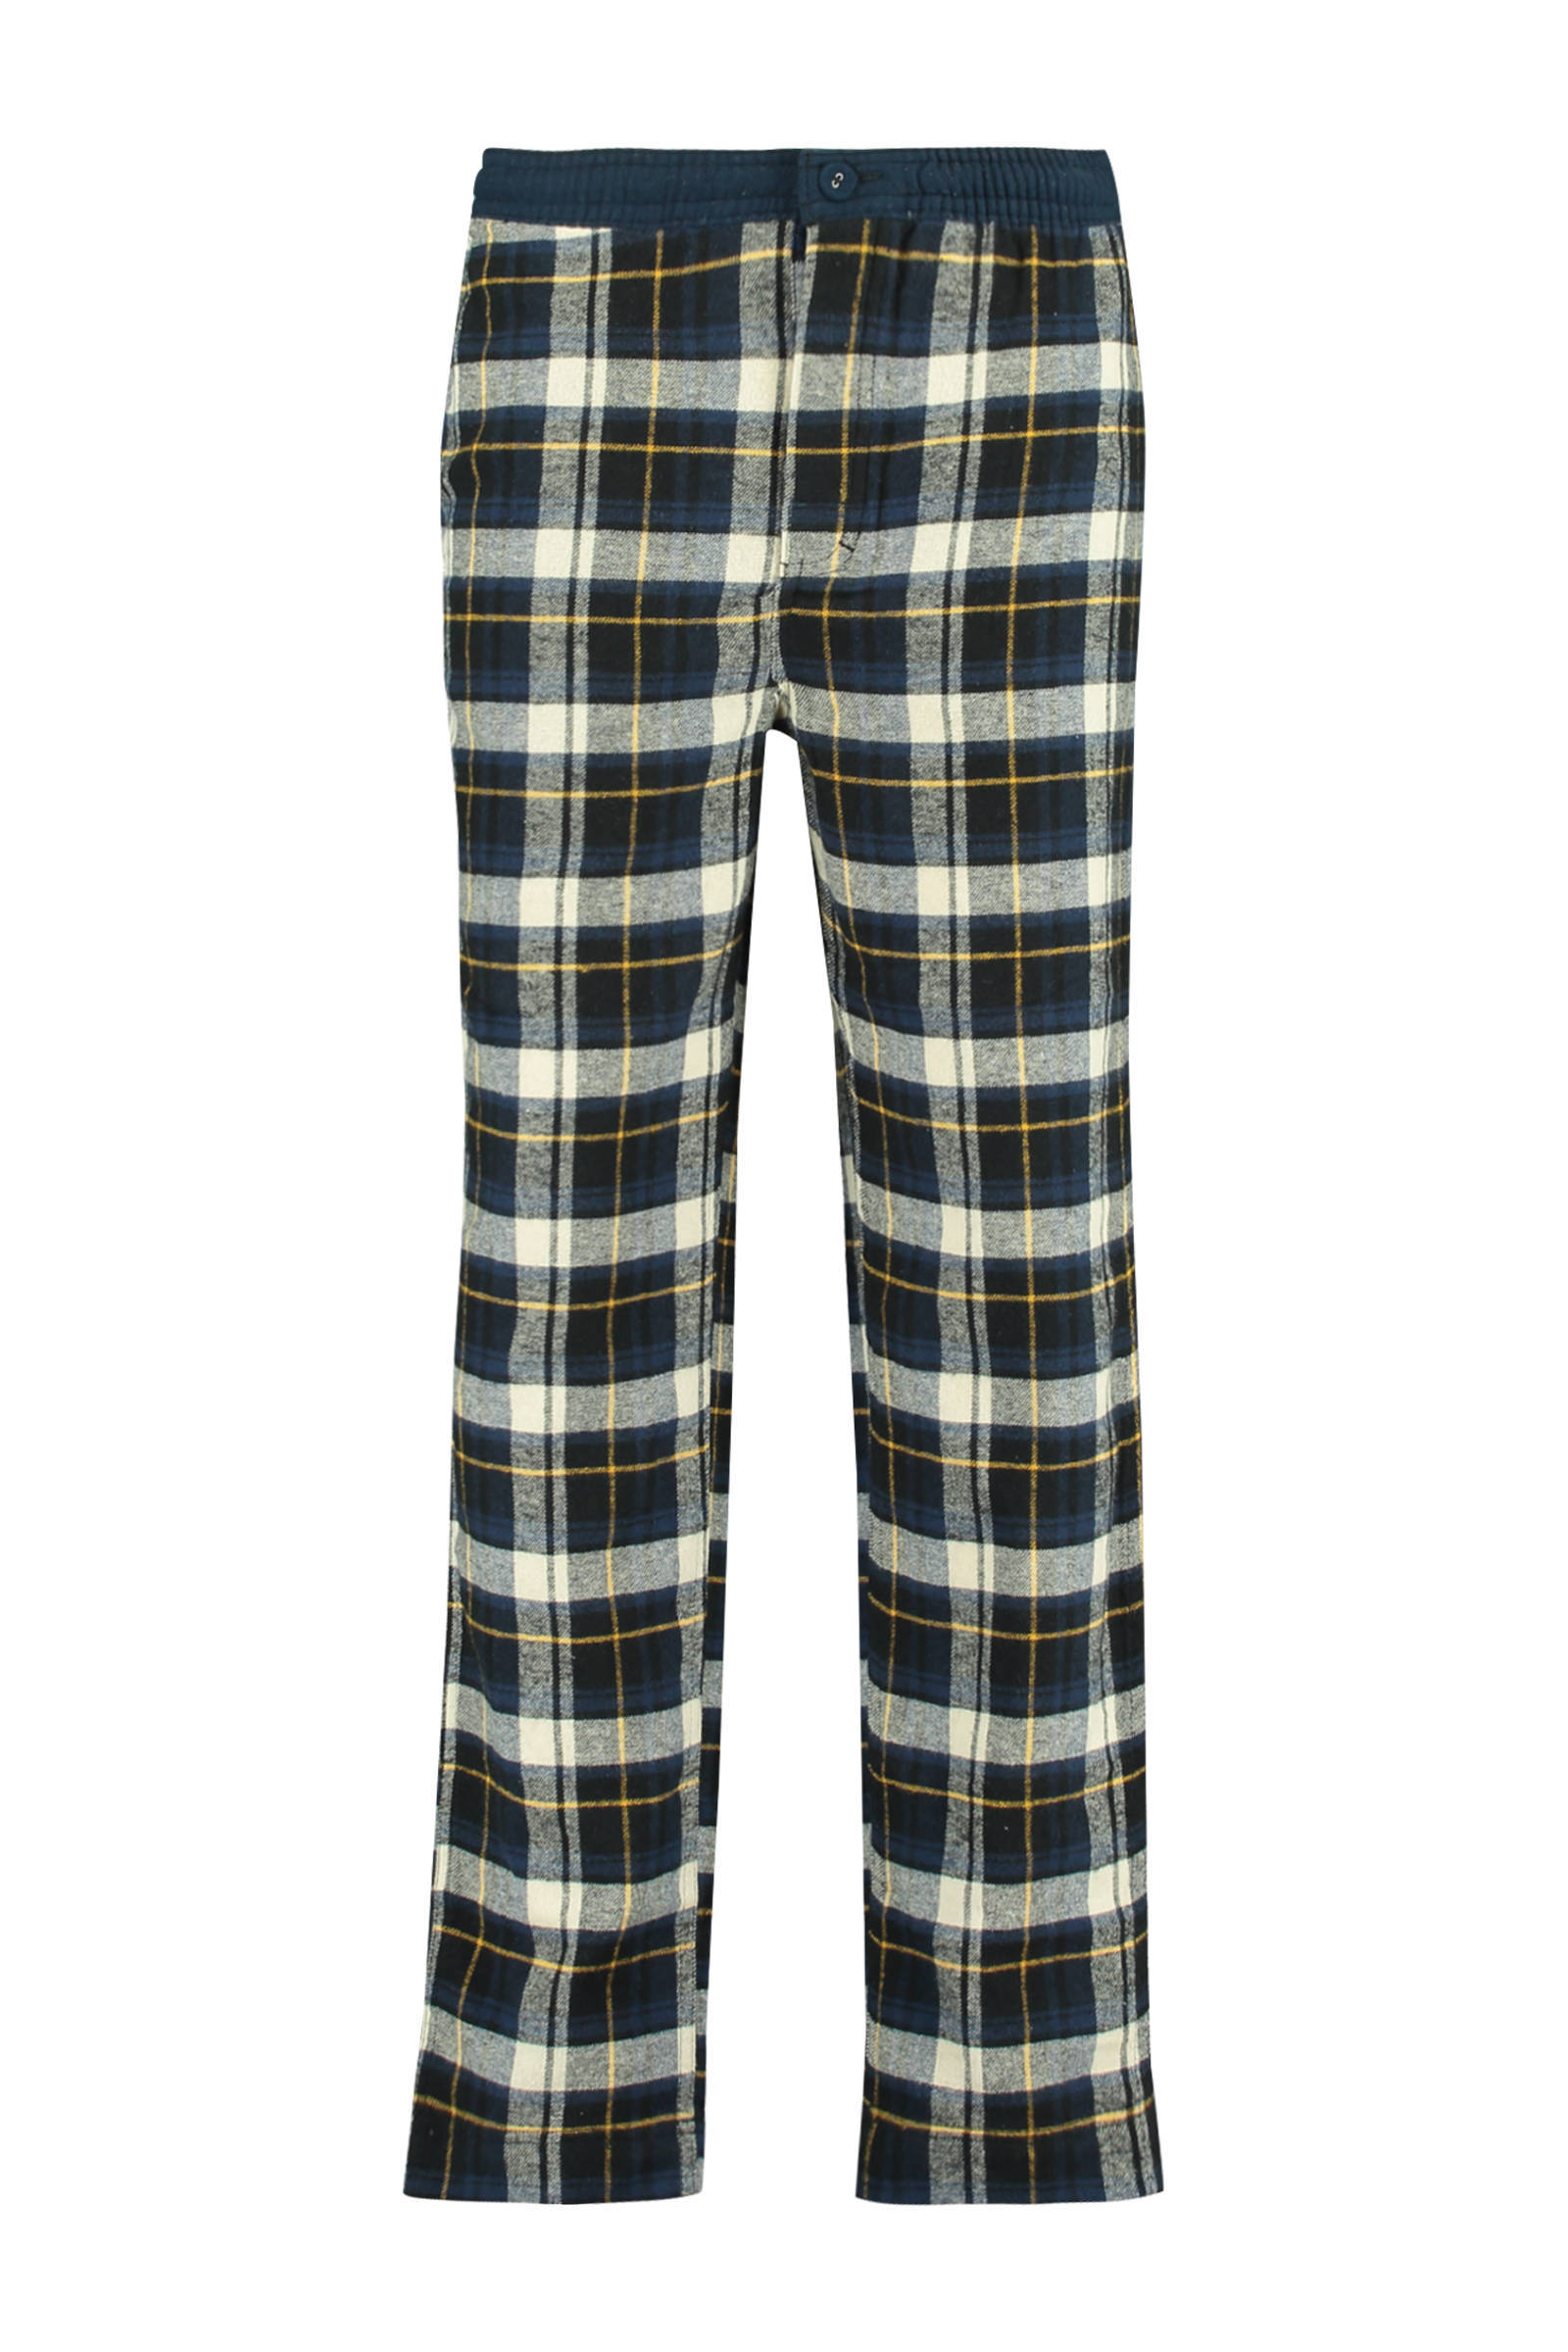 America Today Junior geruite pyjamabroek blauw/geel/wit online kopen